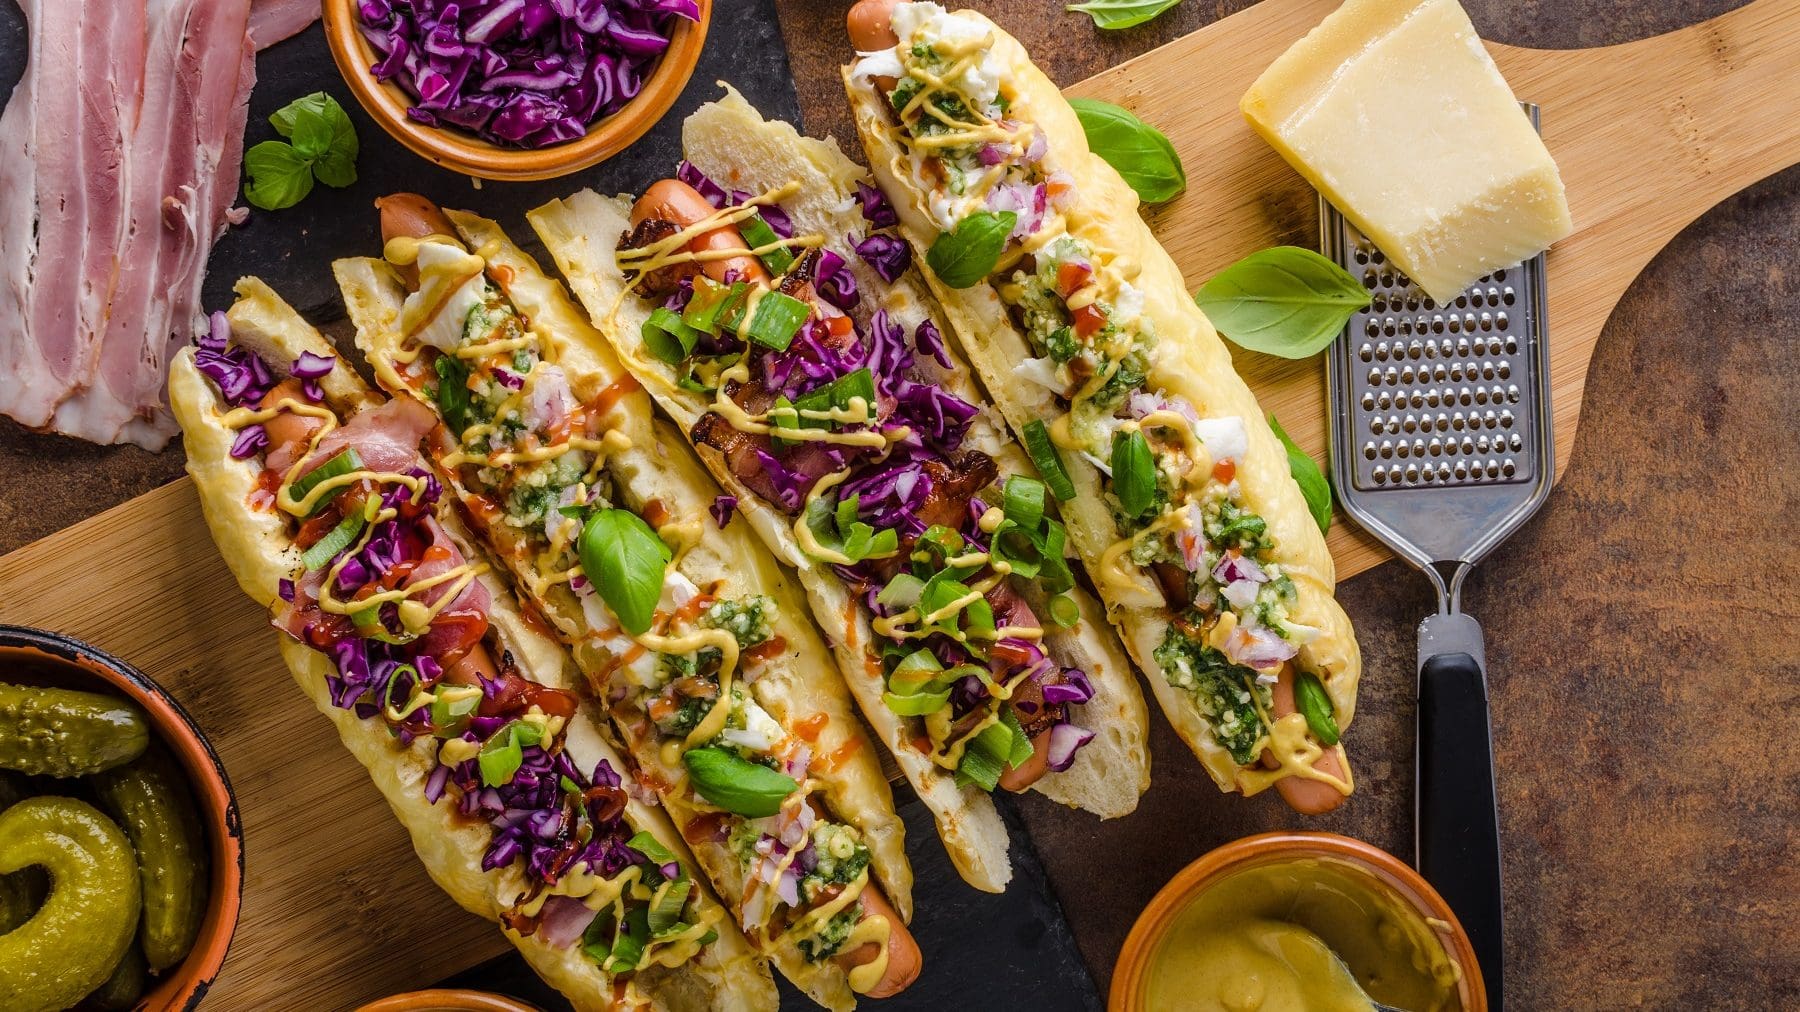 Hot Dogs mit Gemüse und Curry-Sauce auf einem Holzbrett. Die Hot Dog Brötchen sind mit Käse überbacken. Um die Hot Dogs herum liegt Bacon, vier Schalen mit Gurken, Lauch, Rotkohl und Curry-Sauce. Rechts neben den Brötchen liegt ein Stück Käse mit einem Käsehobel. Über den Hot Dogs ist Basilikum verteilt.